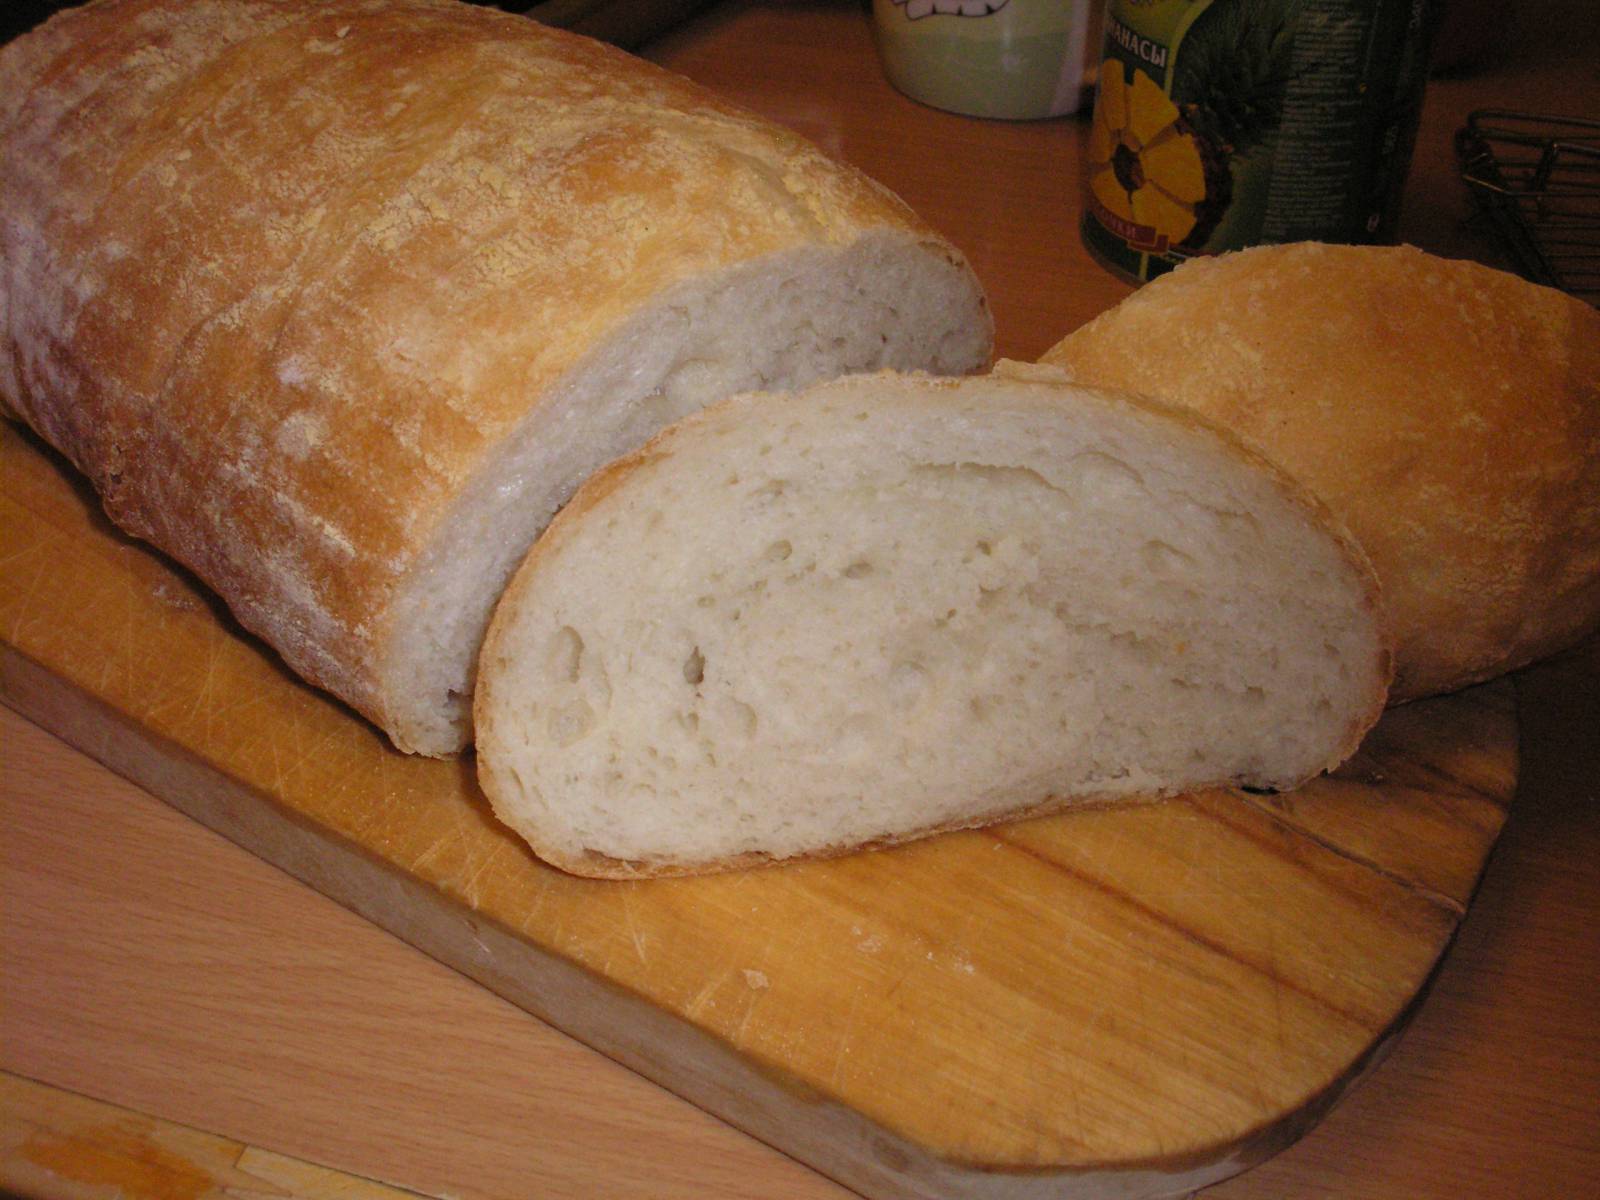 Tejsavó kenyér (sütő)